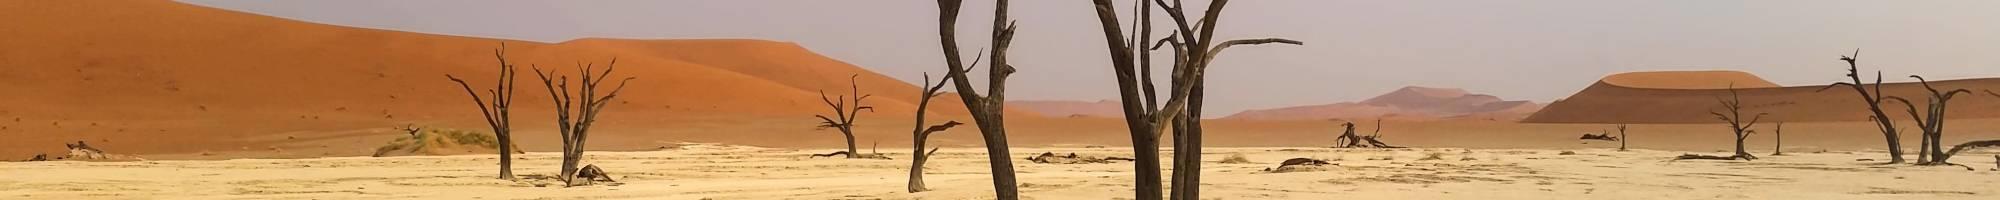 Wüstenreisen - die Namib-Wüste in Namibia (Panorama)